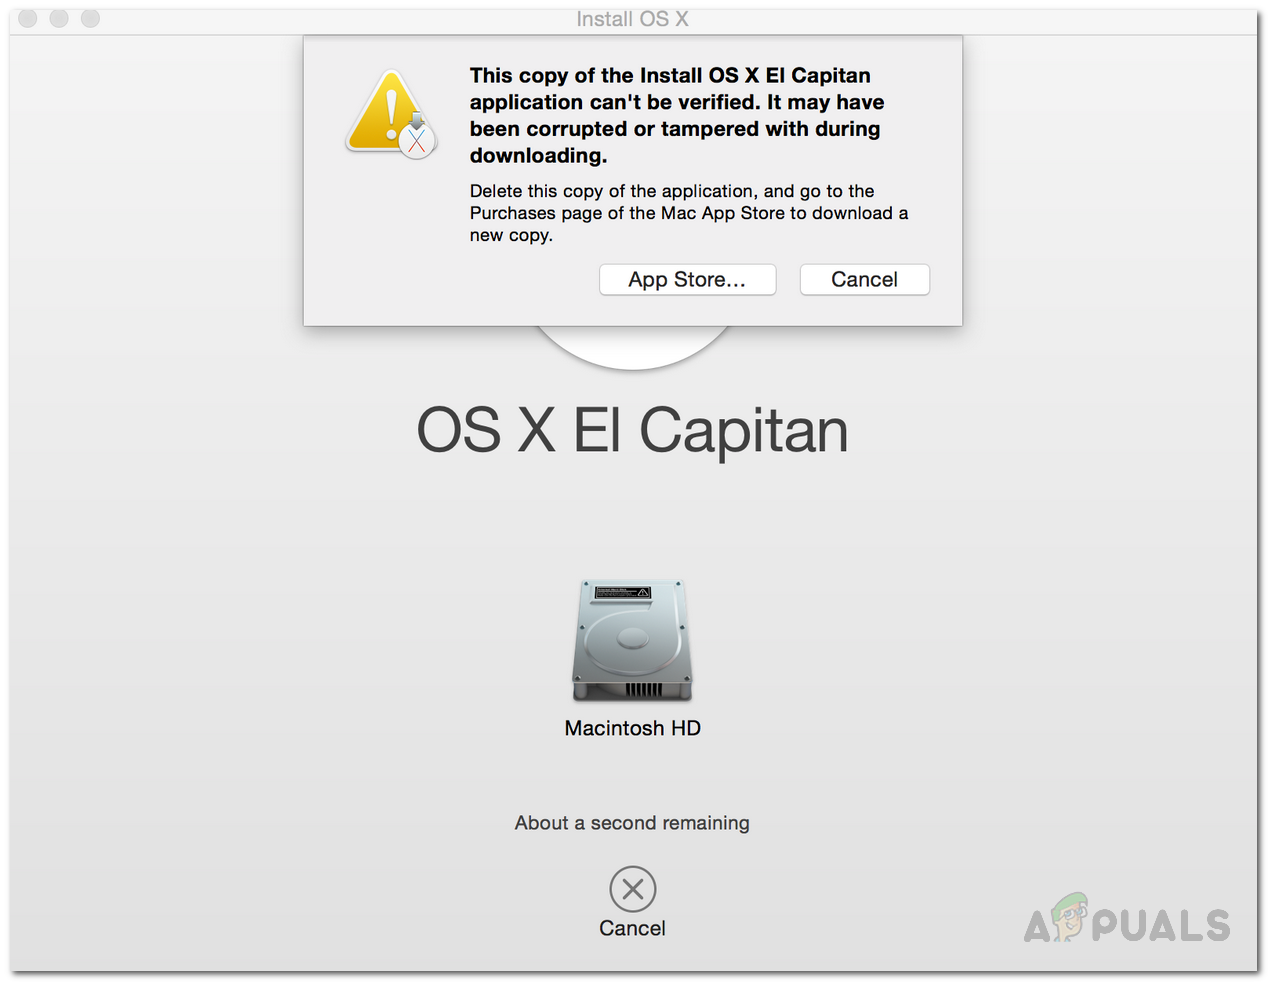 [FIX] No es pot verificar aquesta còpia de l'aplicació Install OS X El Capitan